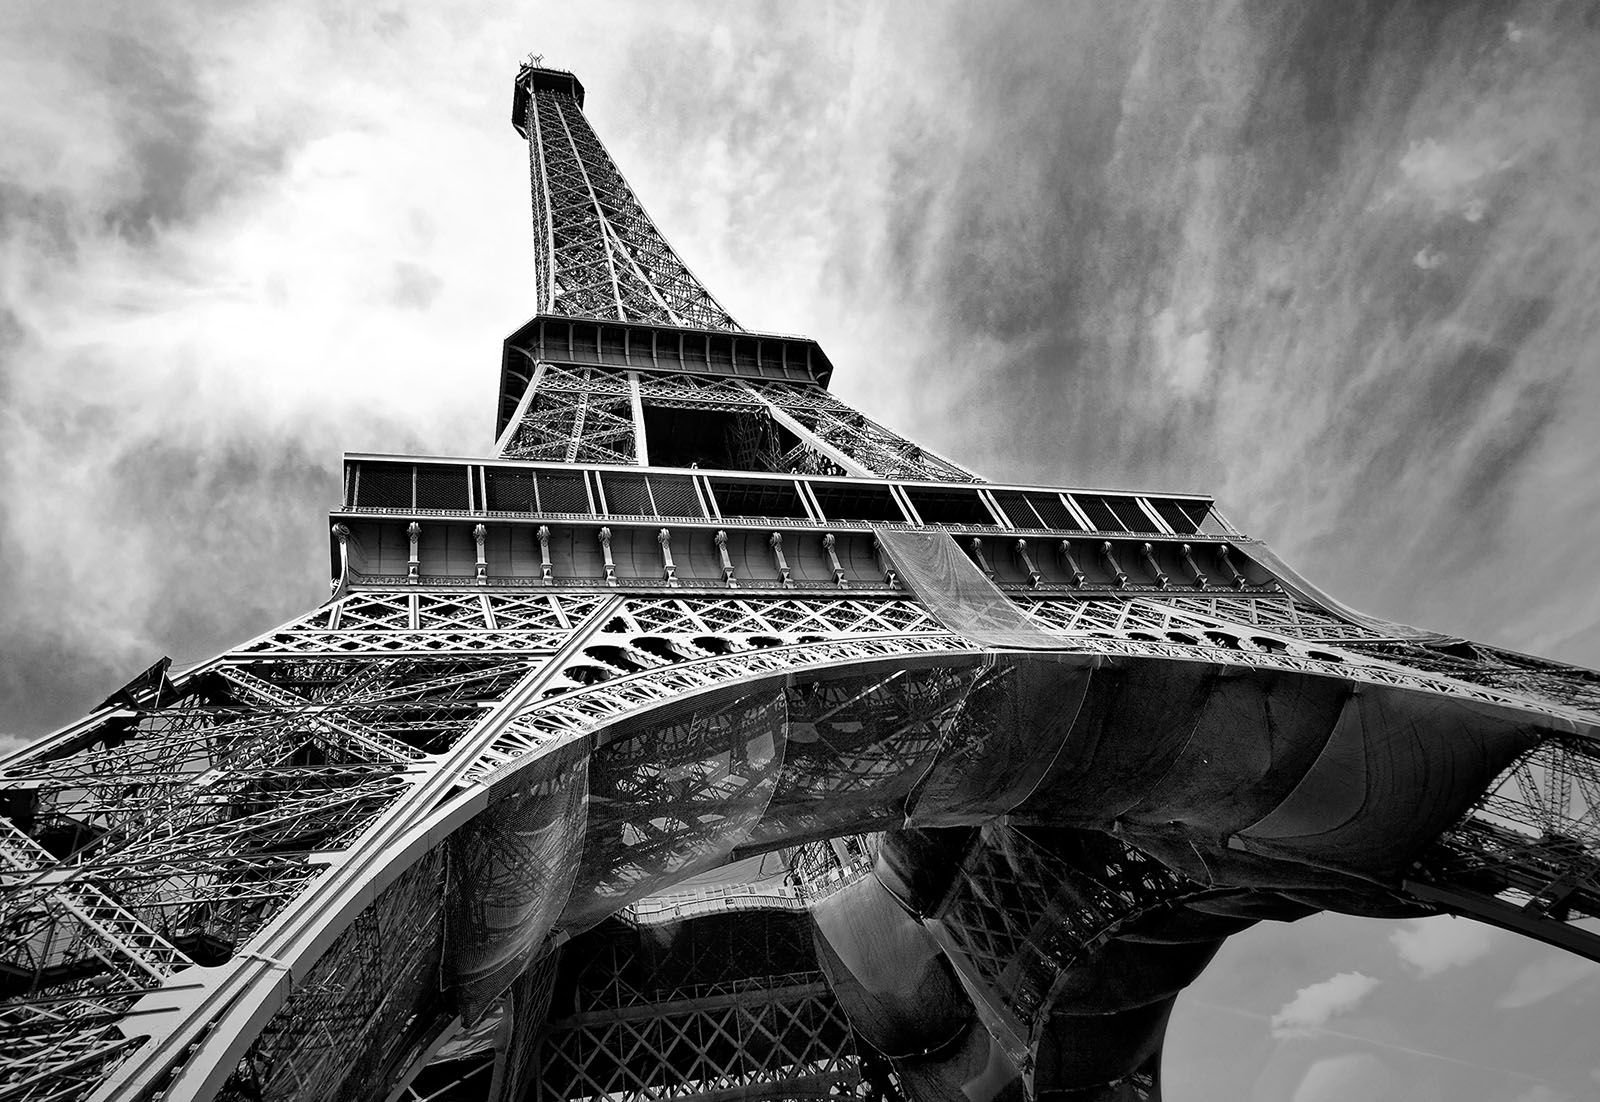 Fotomurale: Torre Eiffel (2) - 254x368 cm